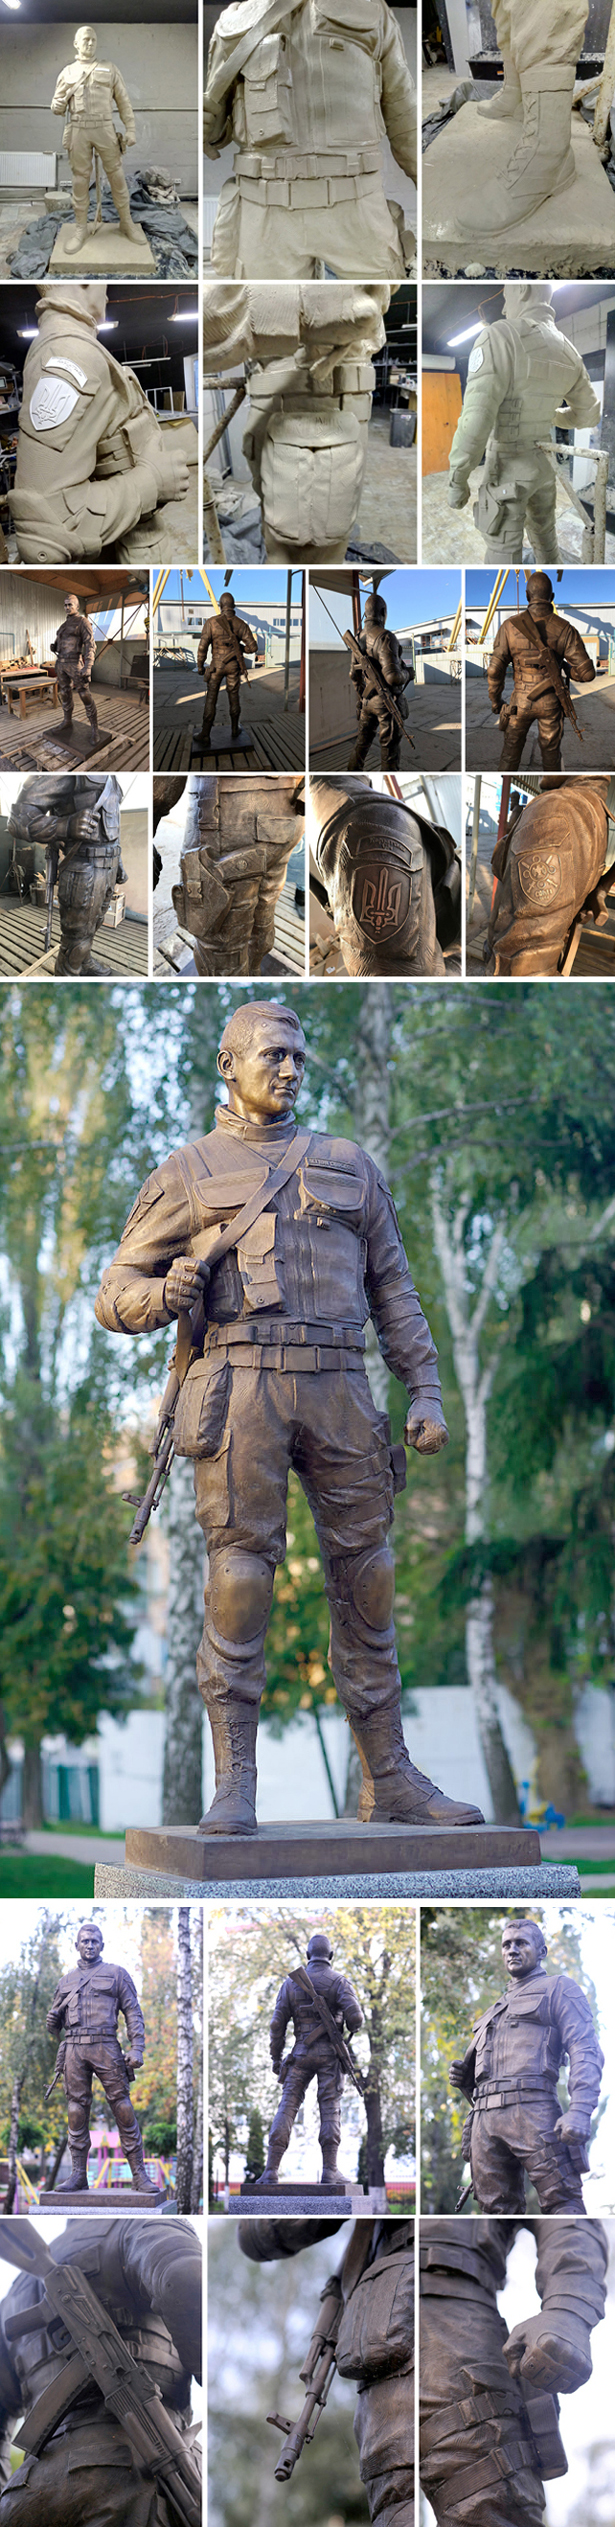 Скульптуры ,памятники военным, мемориальные военные комплексы под заказ